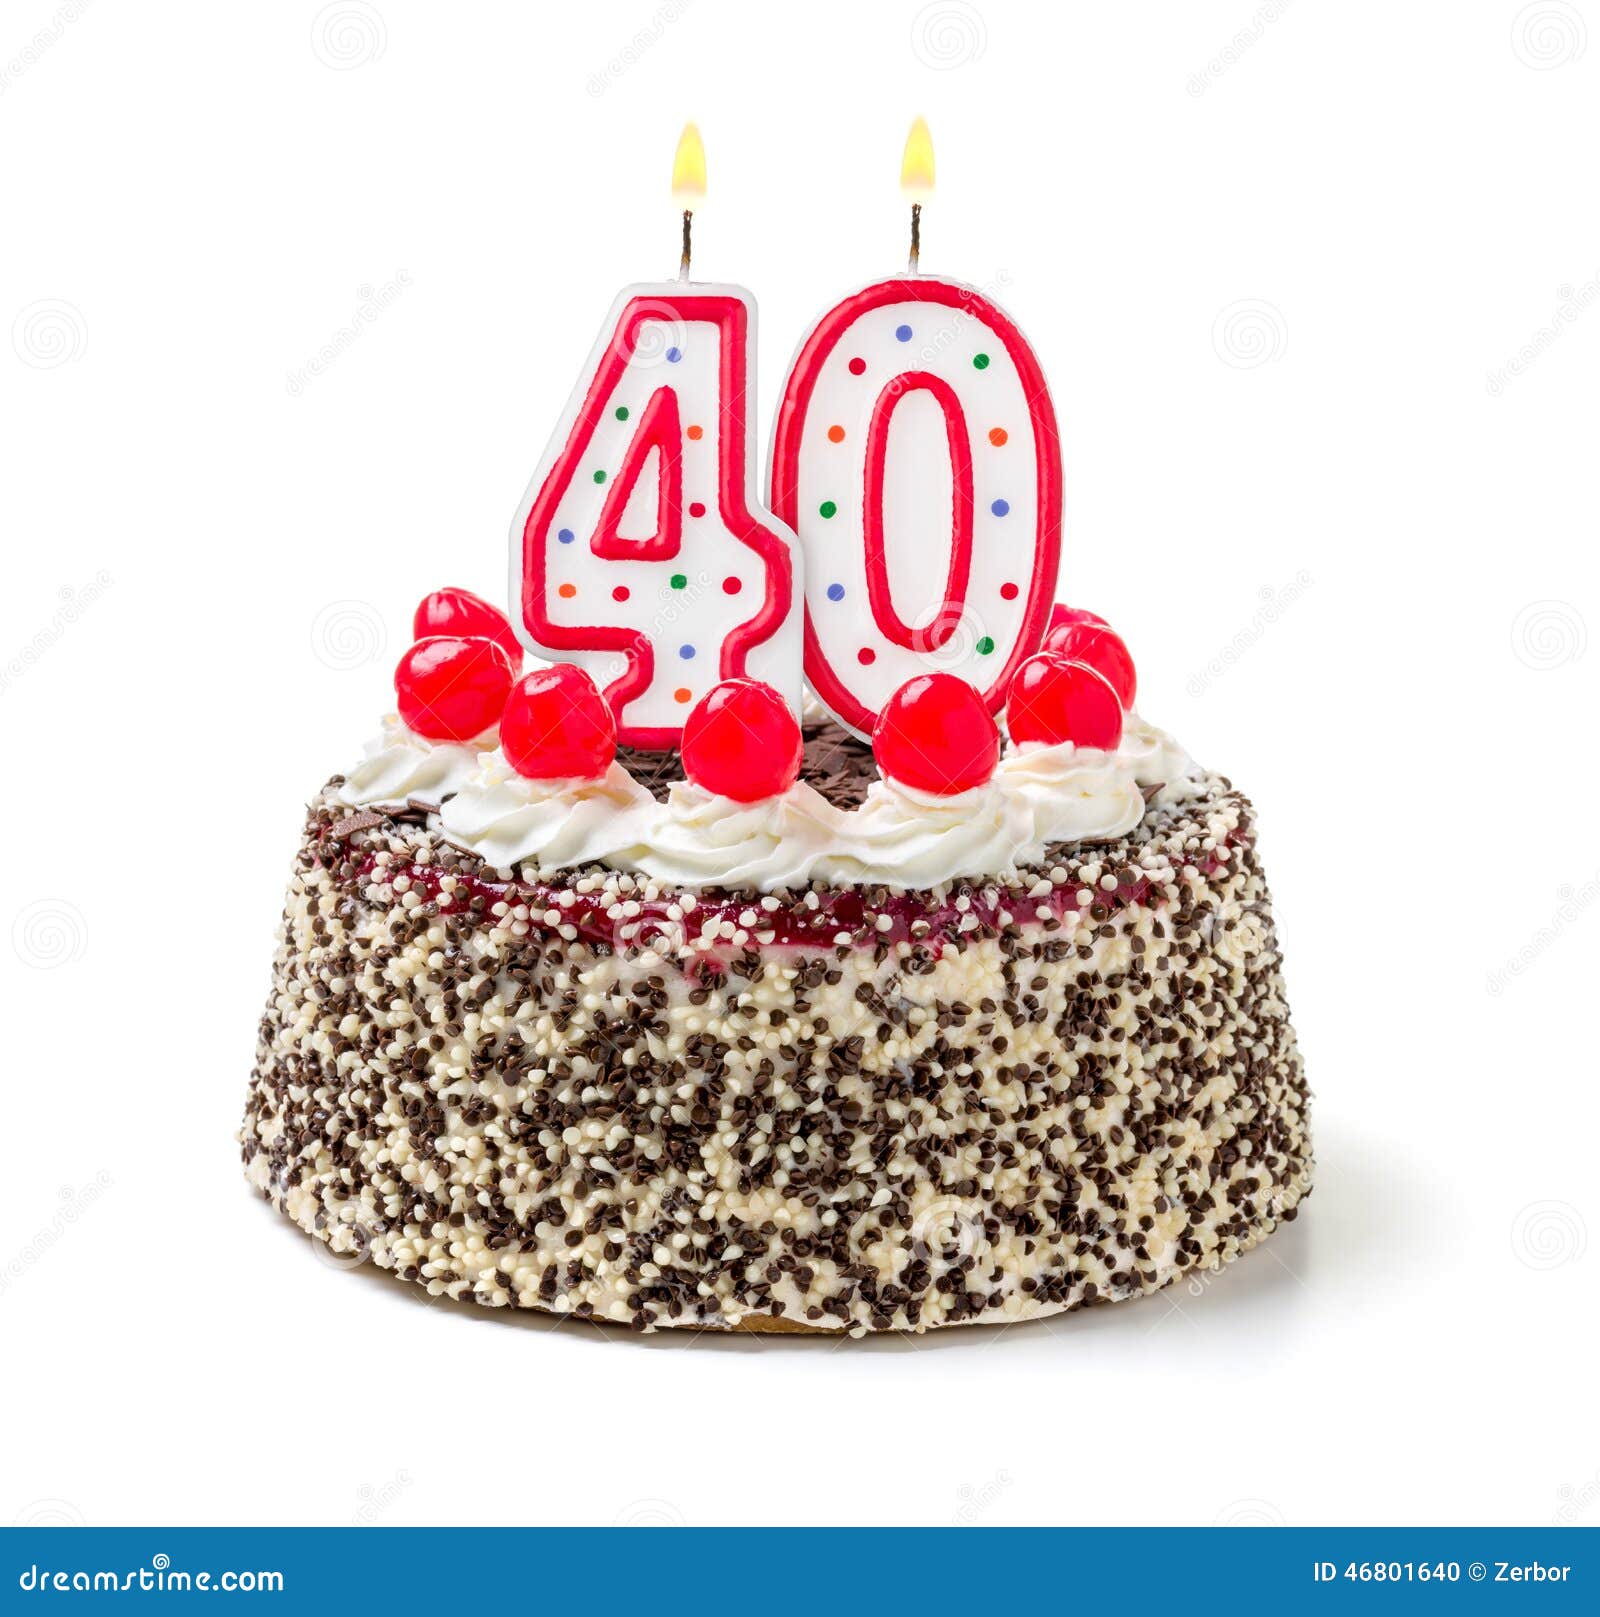 Bolo de 40 anos: 40 FOTOS para comemorar a chegada da idade